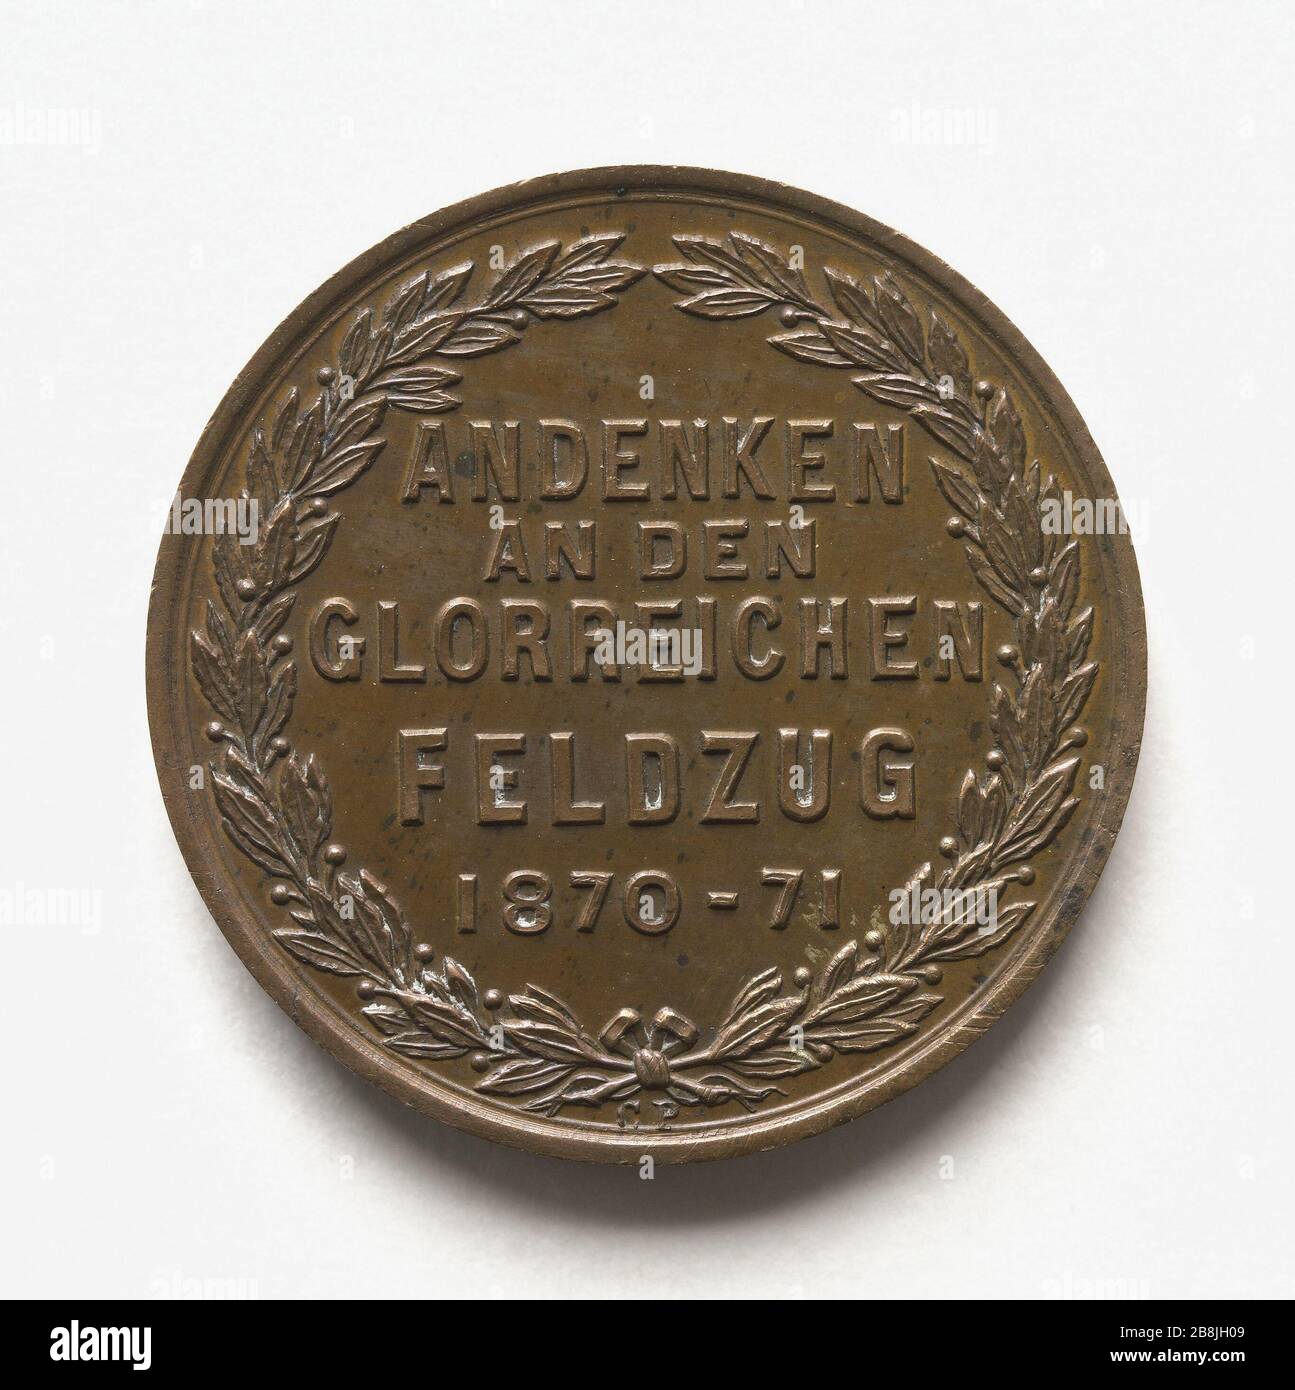 Deutsche Medaille: Sieg gegen Frankreich, 1870-1871 (Dummy-Titel) Médaille allemande : Victoire contre la France, 1870-1871. Bronze, 1871. Paris, musée Carnavalet. Stockfoto